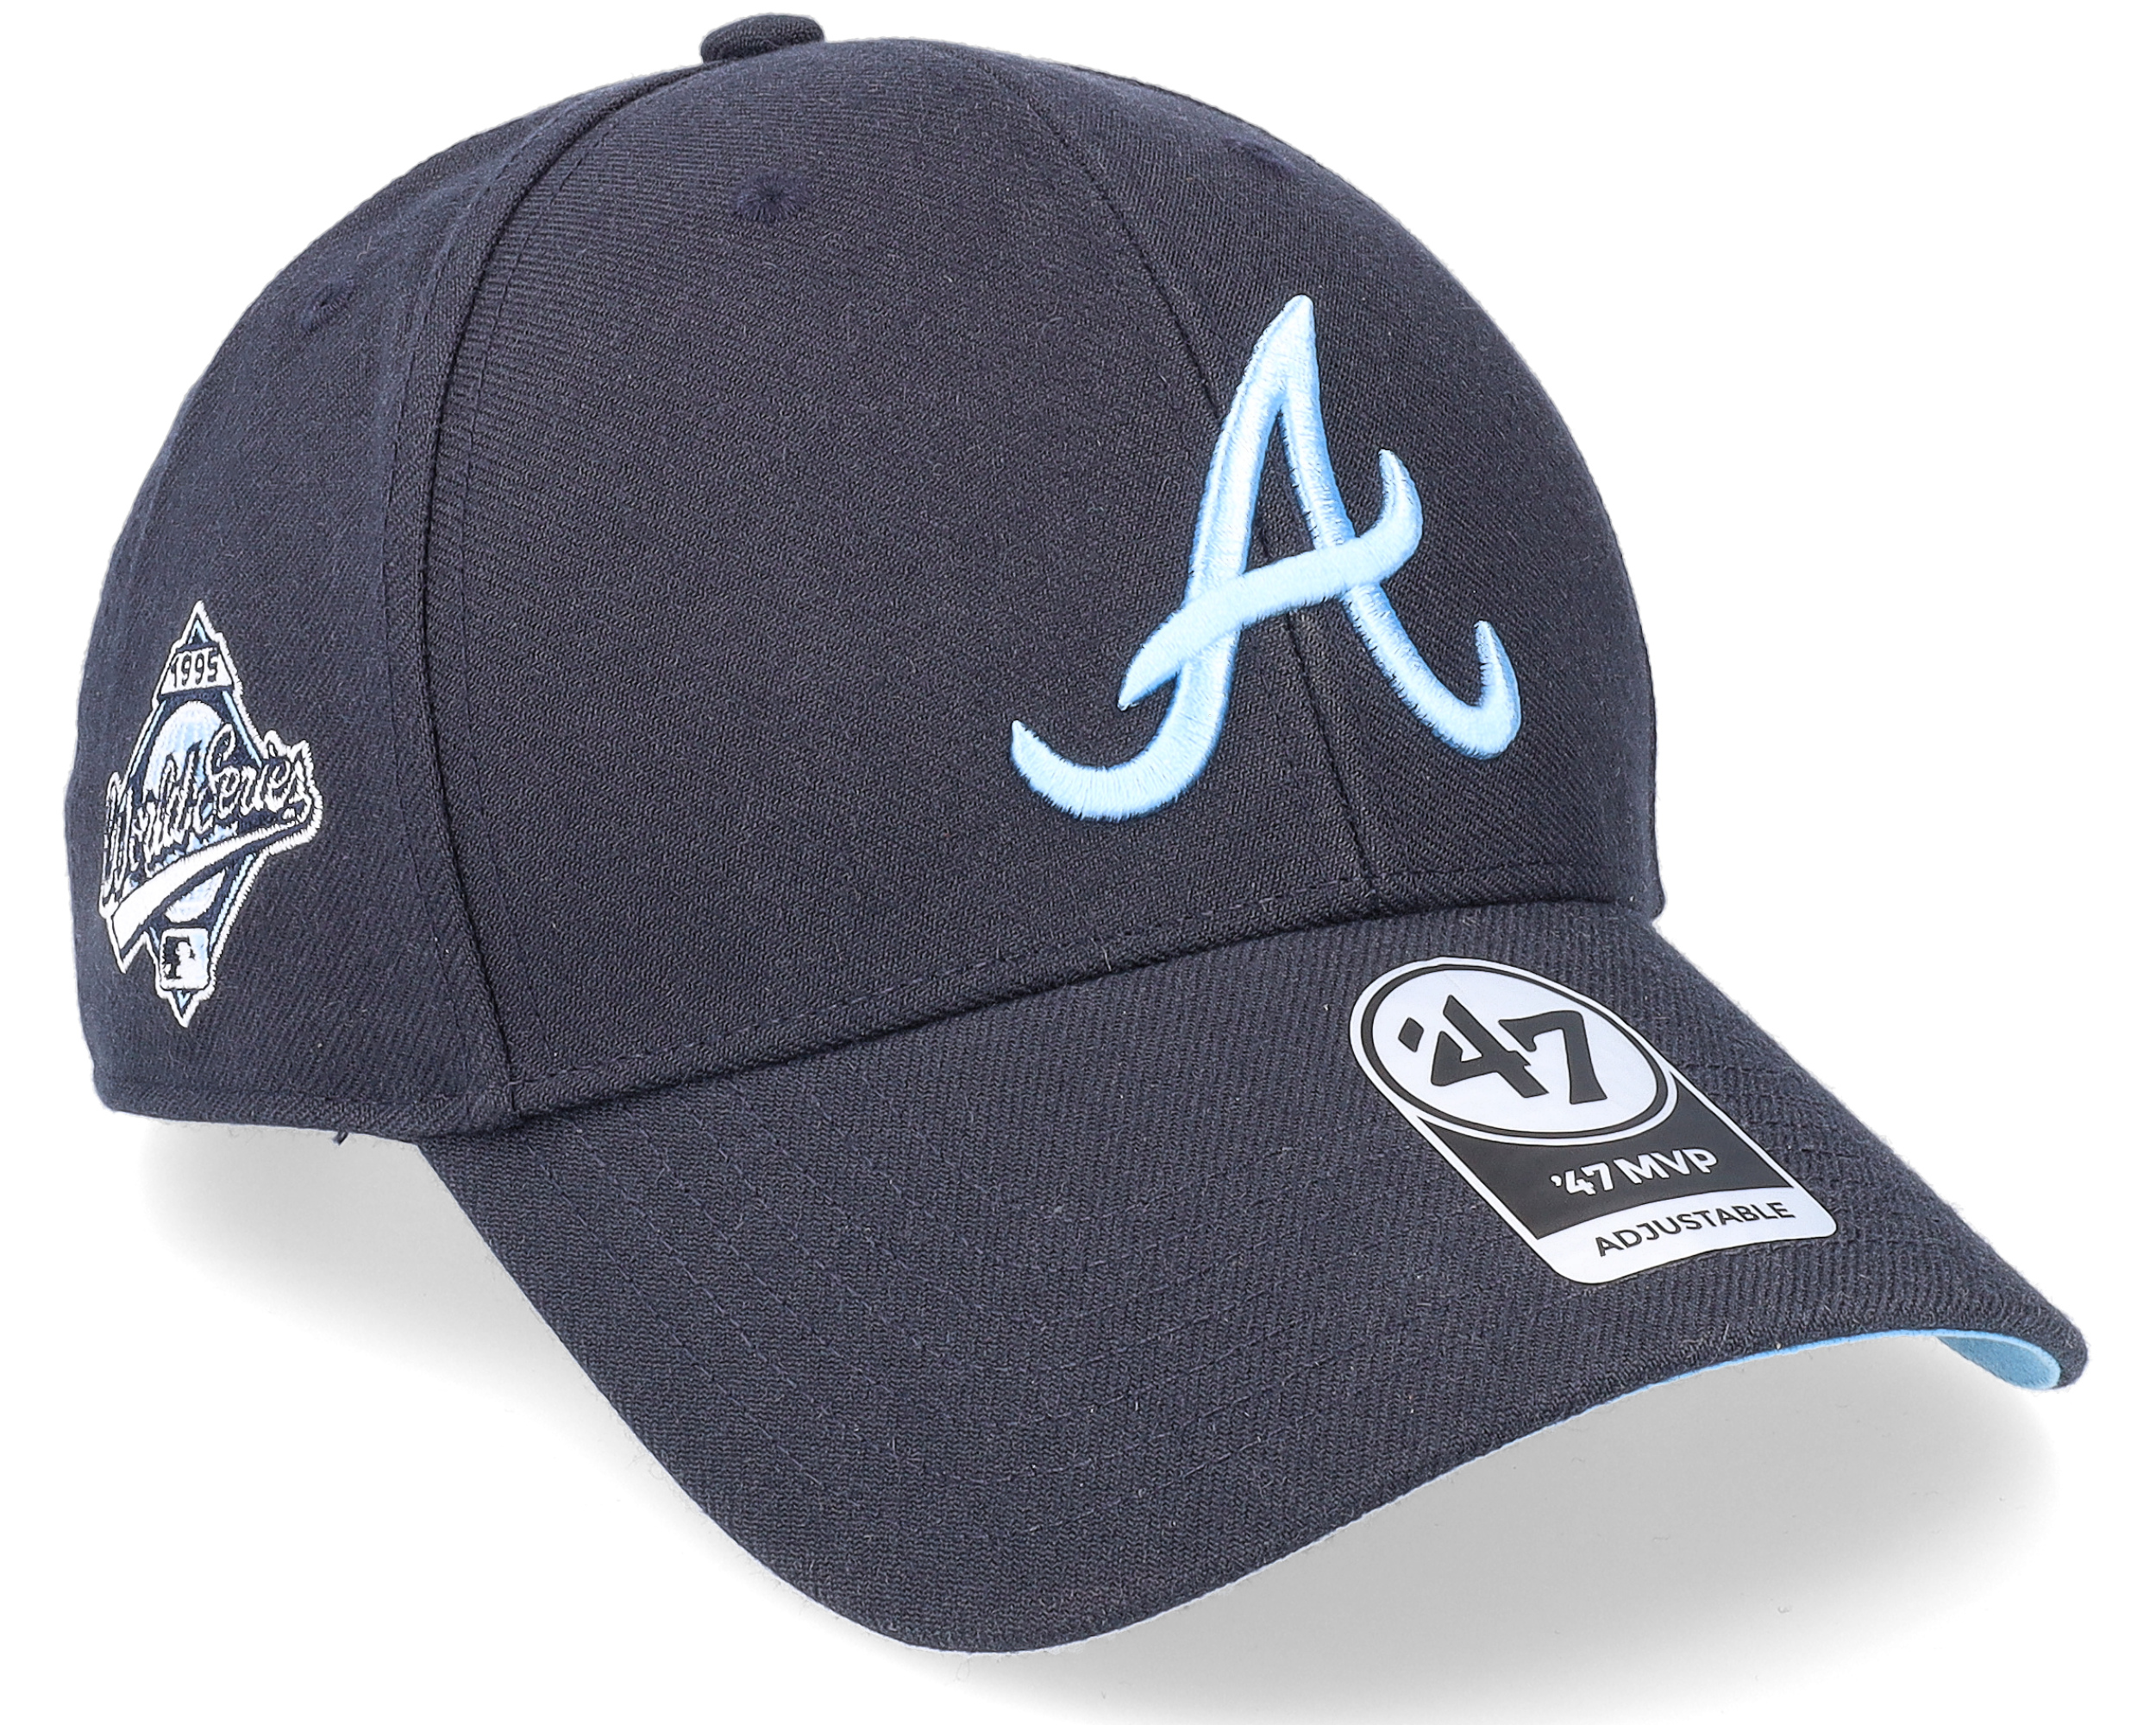 Atlanta cap navy blue - MVP Atlanta Braves 47 Brand : Headict